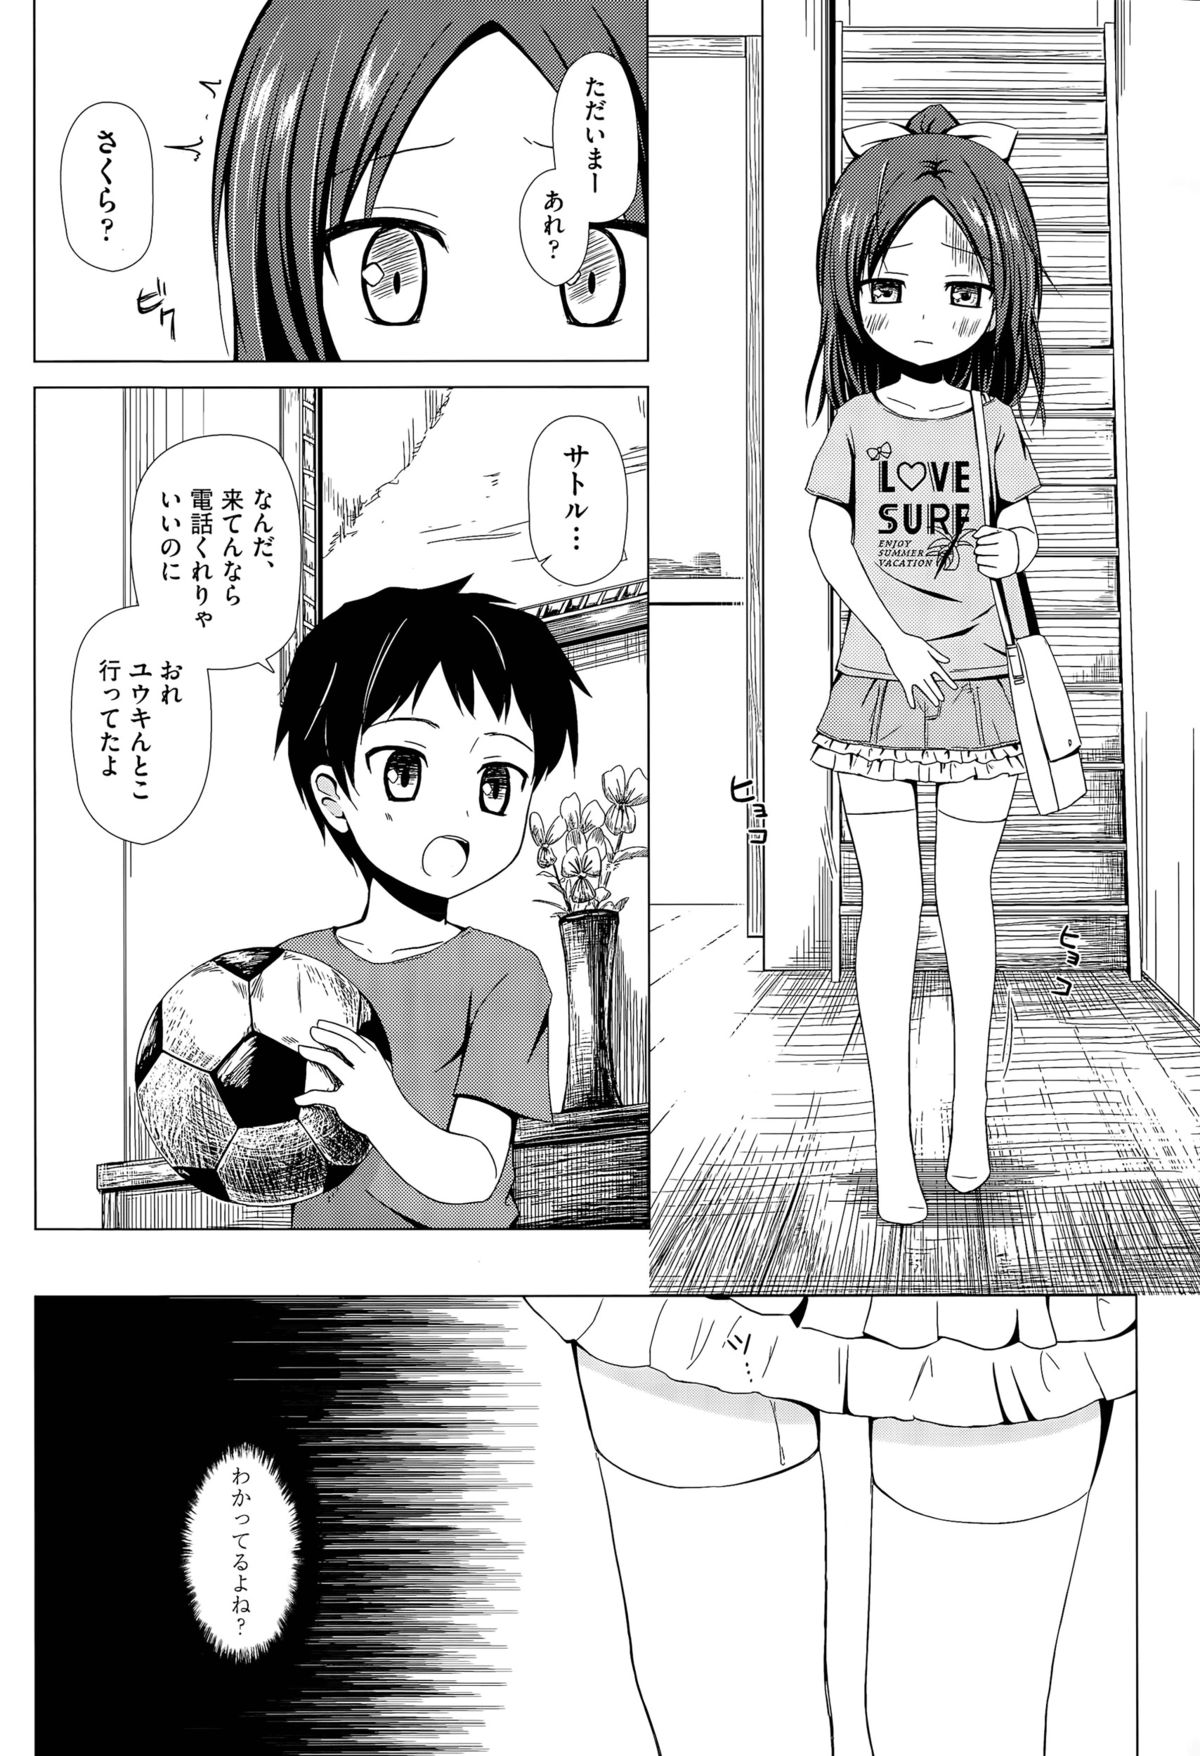 [Yukino Minato] Owari no Nikkichou Ch. 1-2 page 2 full